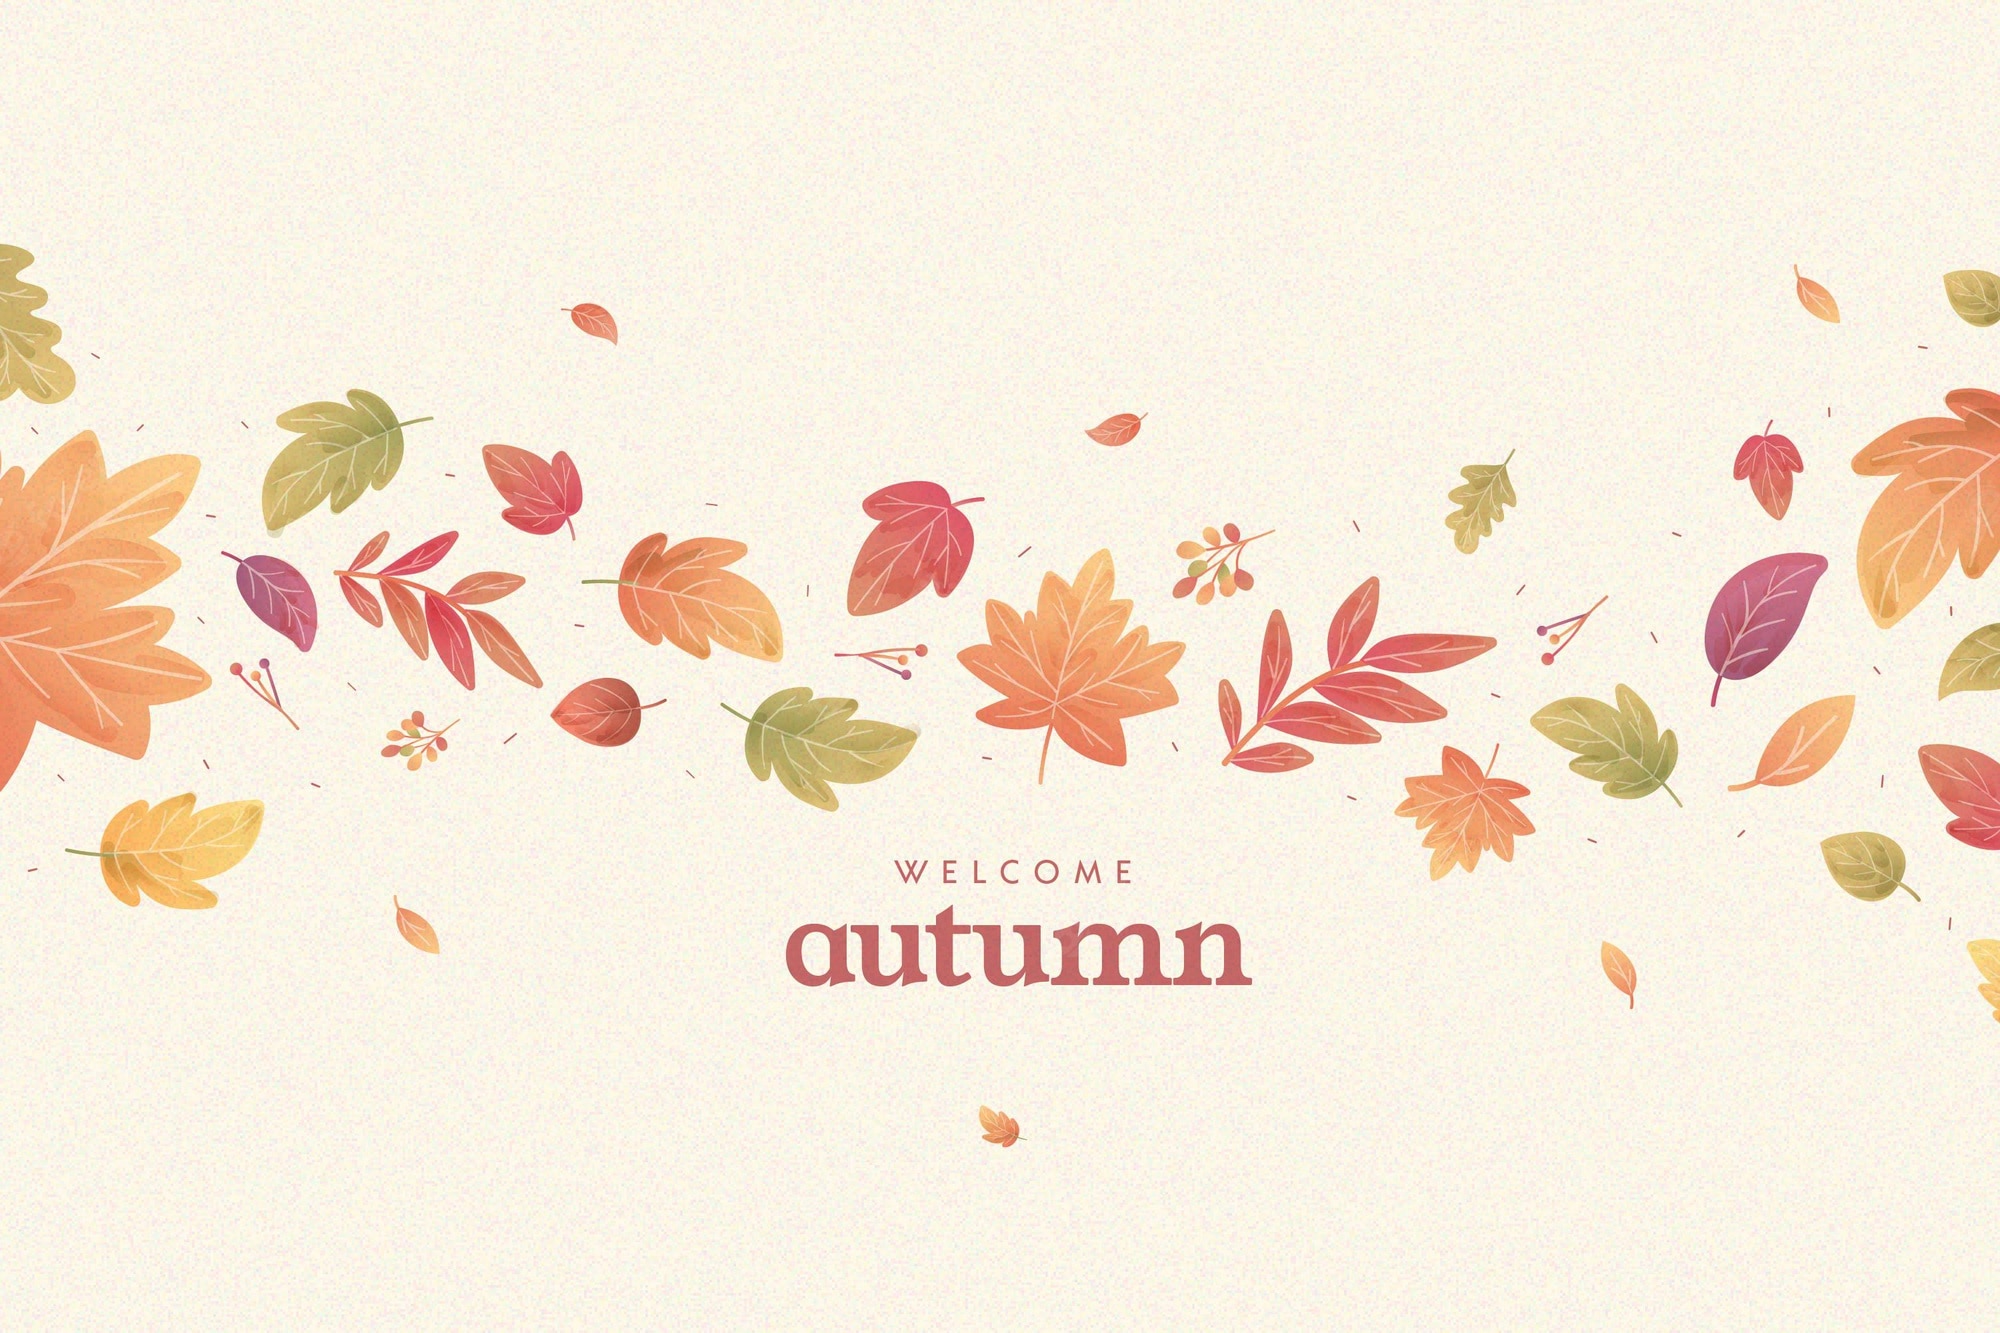 Autumn wallpaper Vectors & Illustrations for Free Download